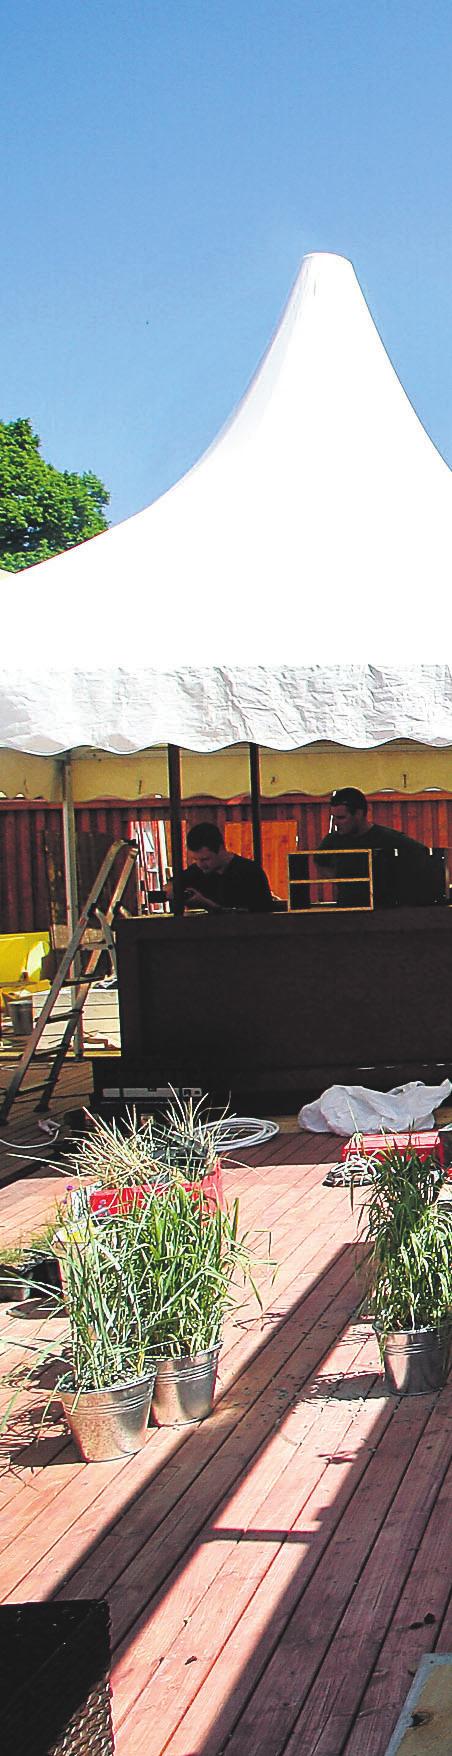 ajal Lääne-Virumaa ärimees Verner Aas ja alustas 2008. aasta kevadel maja omavolilist lammutamist. Muinsuskaitseamet peatas töö. Paar nädalat hiljem, 2008. aasta 15. mail unikaalne maja süüdati.